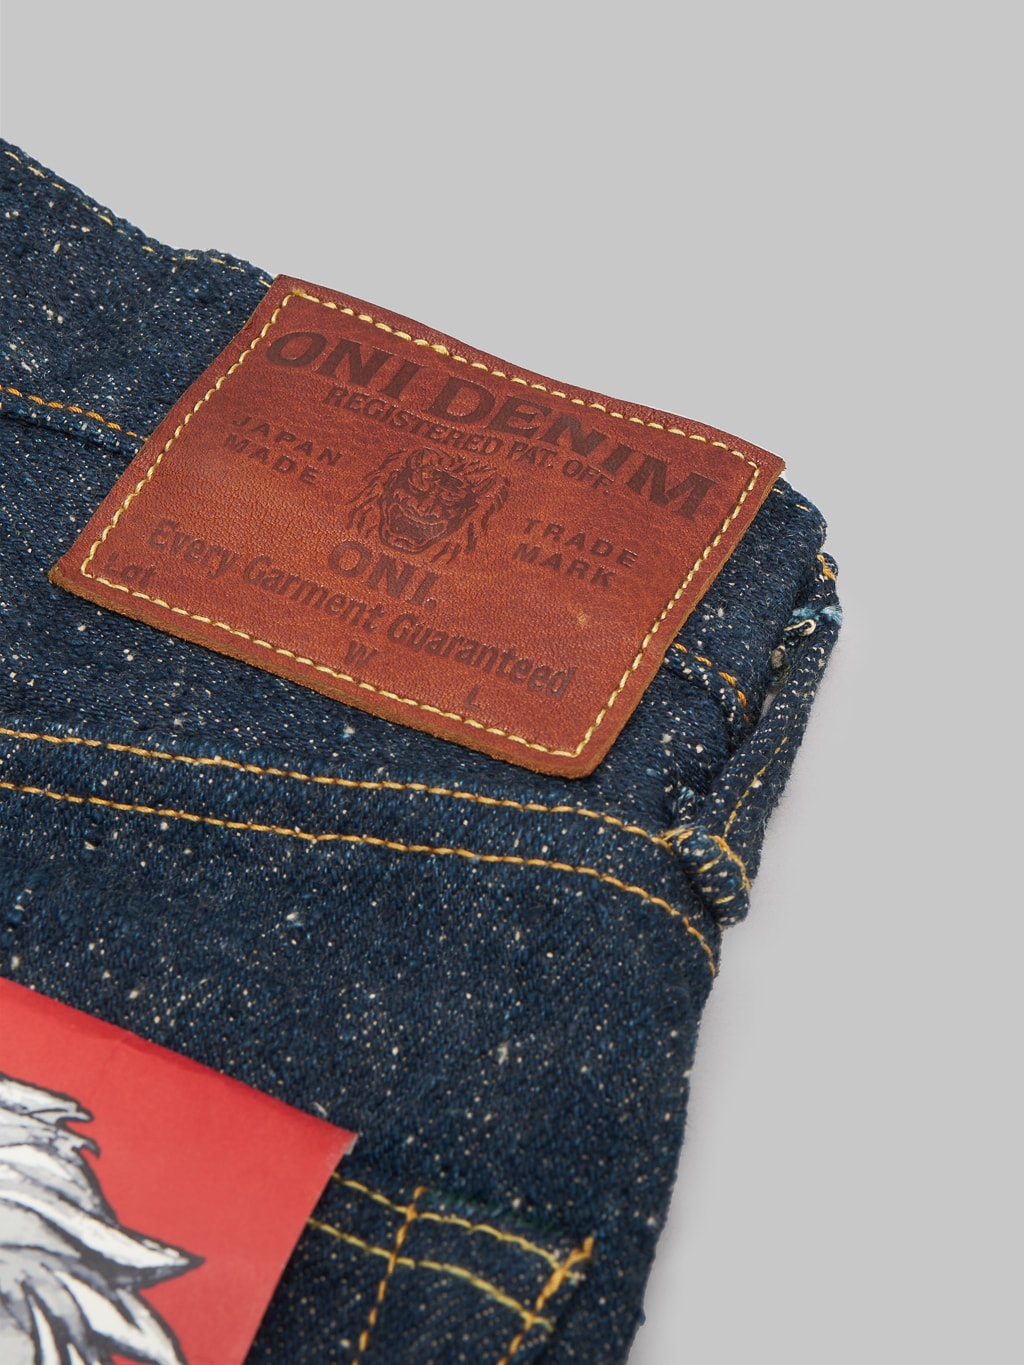 ONI 622 Secret Super Rough 20oz Jeans patch closeup